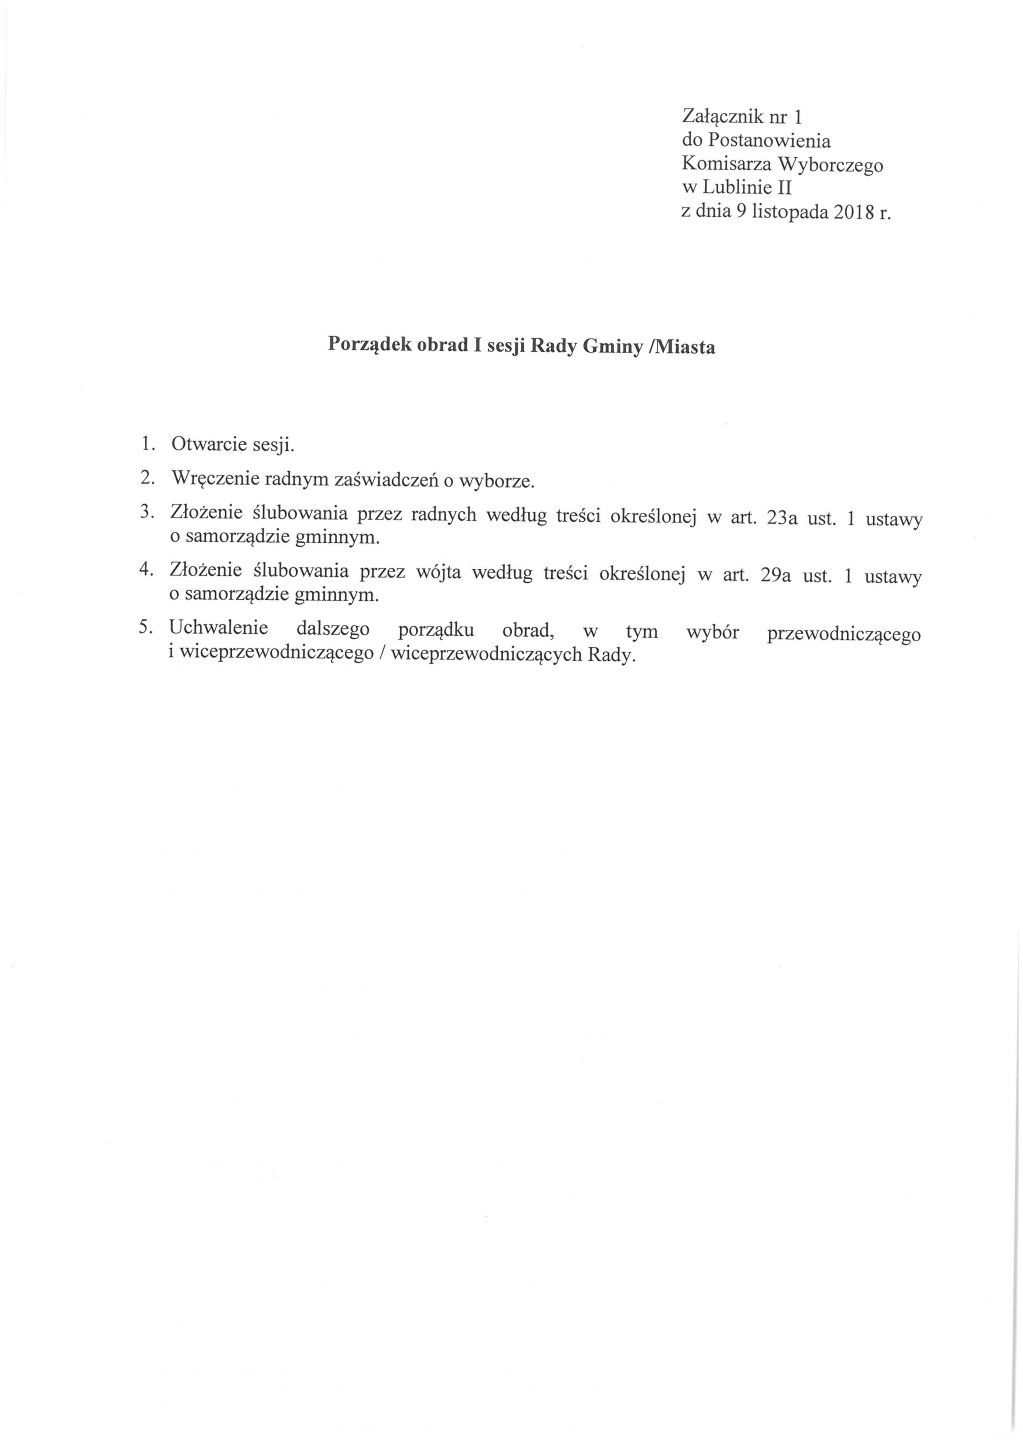 Postanowienia Komisarza Wyborczego w Lublinie II w sprawie zwołania I sesji